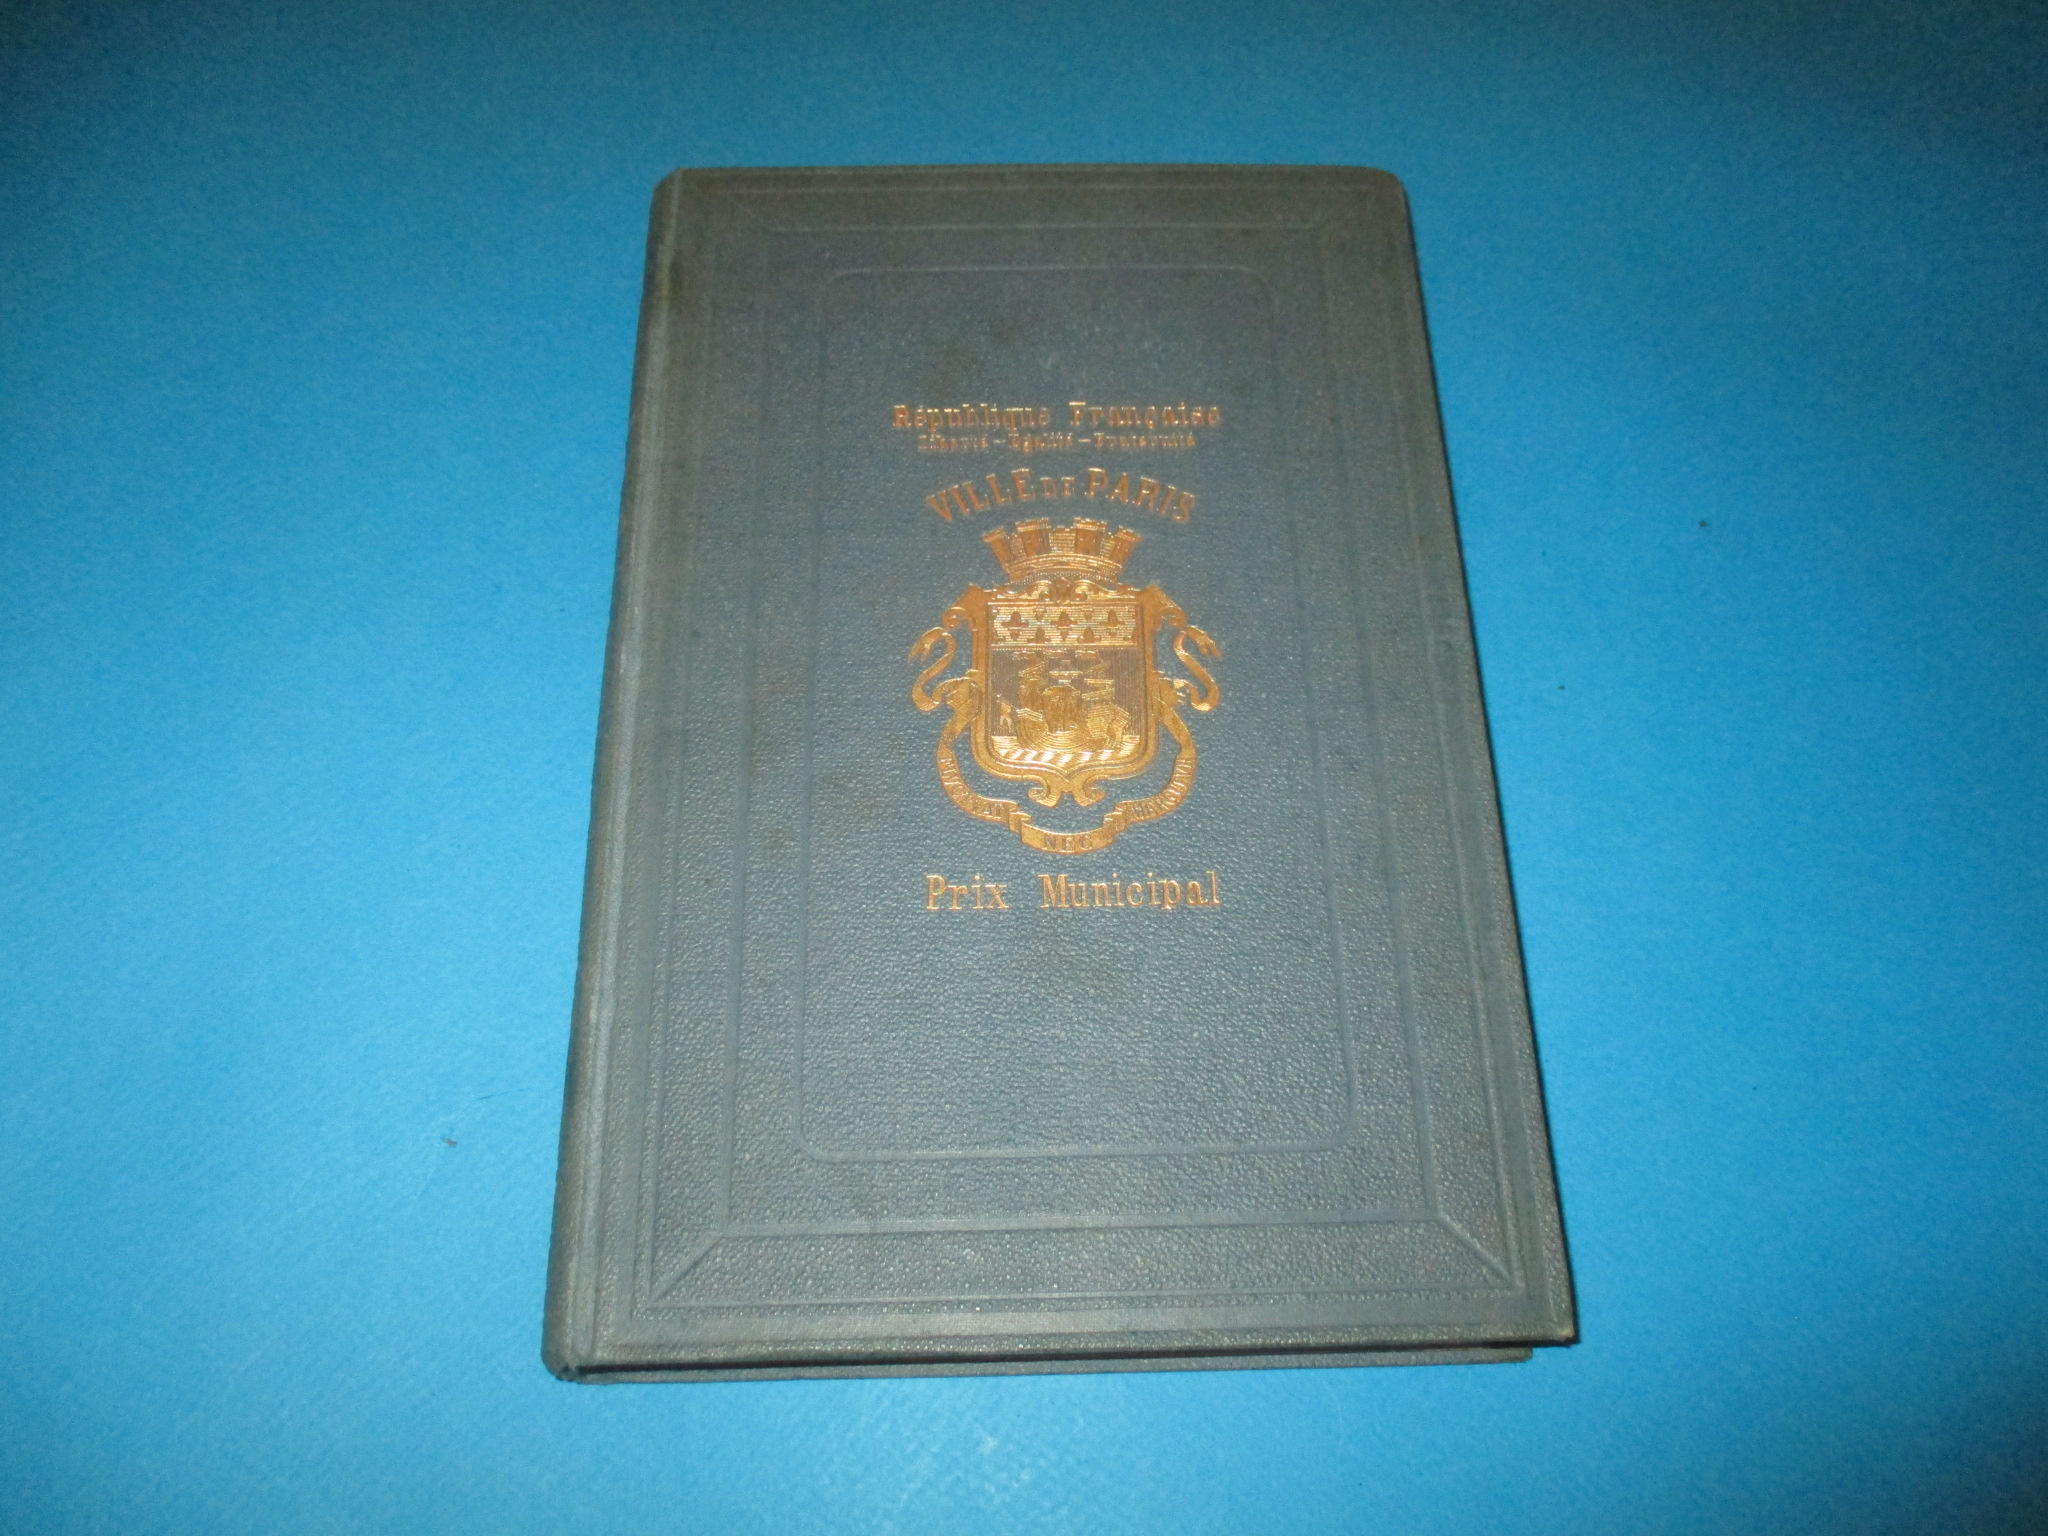 Autour du poèle, Contes et récits pour les enfants, Richard Gustafsson, Firmin-Didot 1889